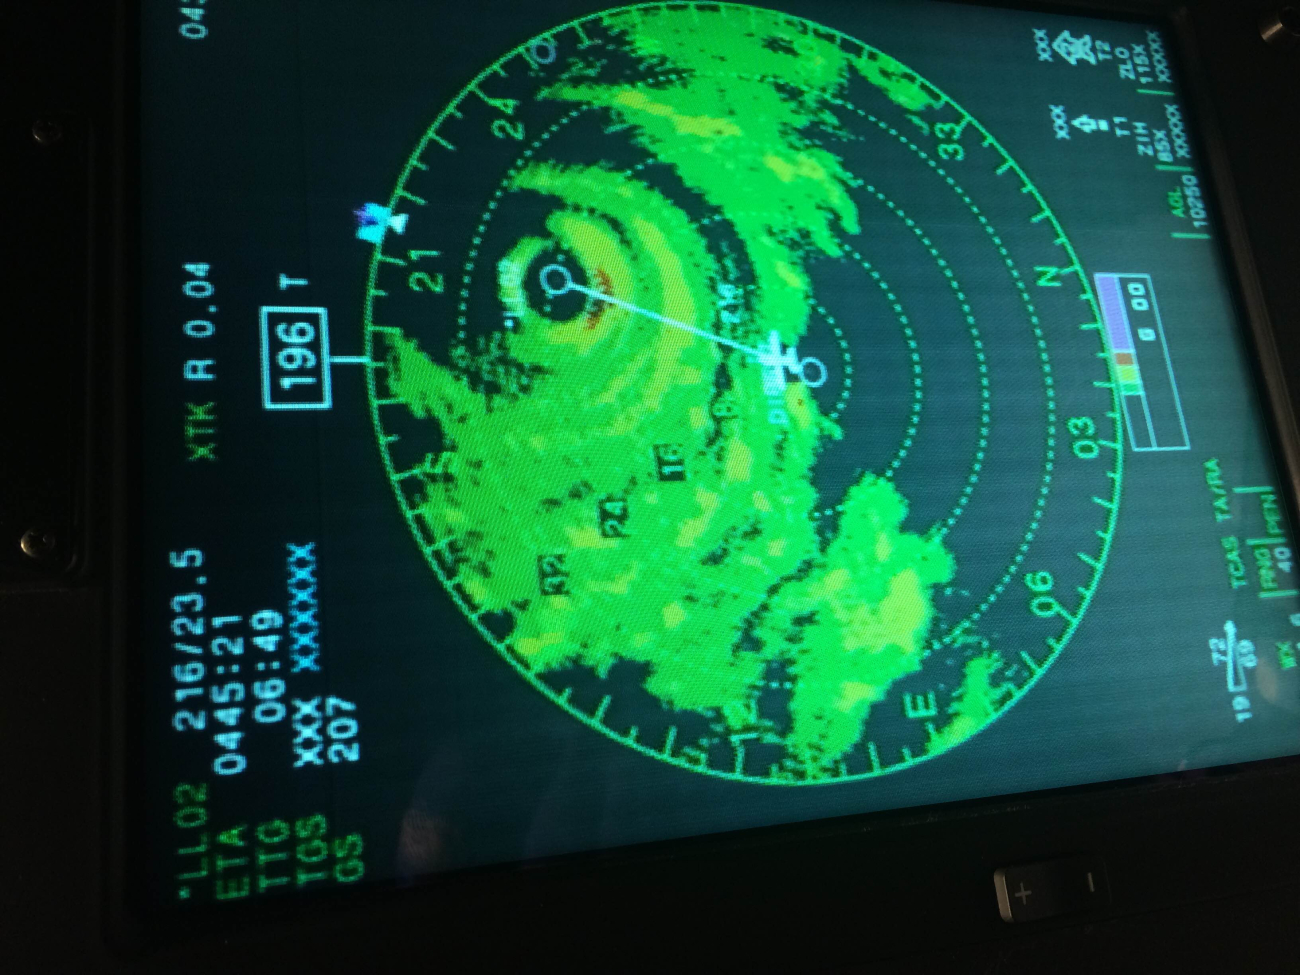 P-3 radar view as plane navigates toward eye of storm